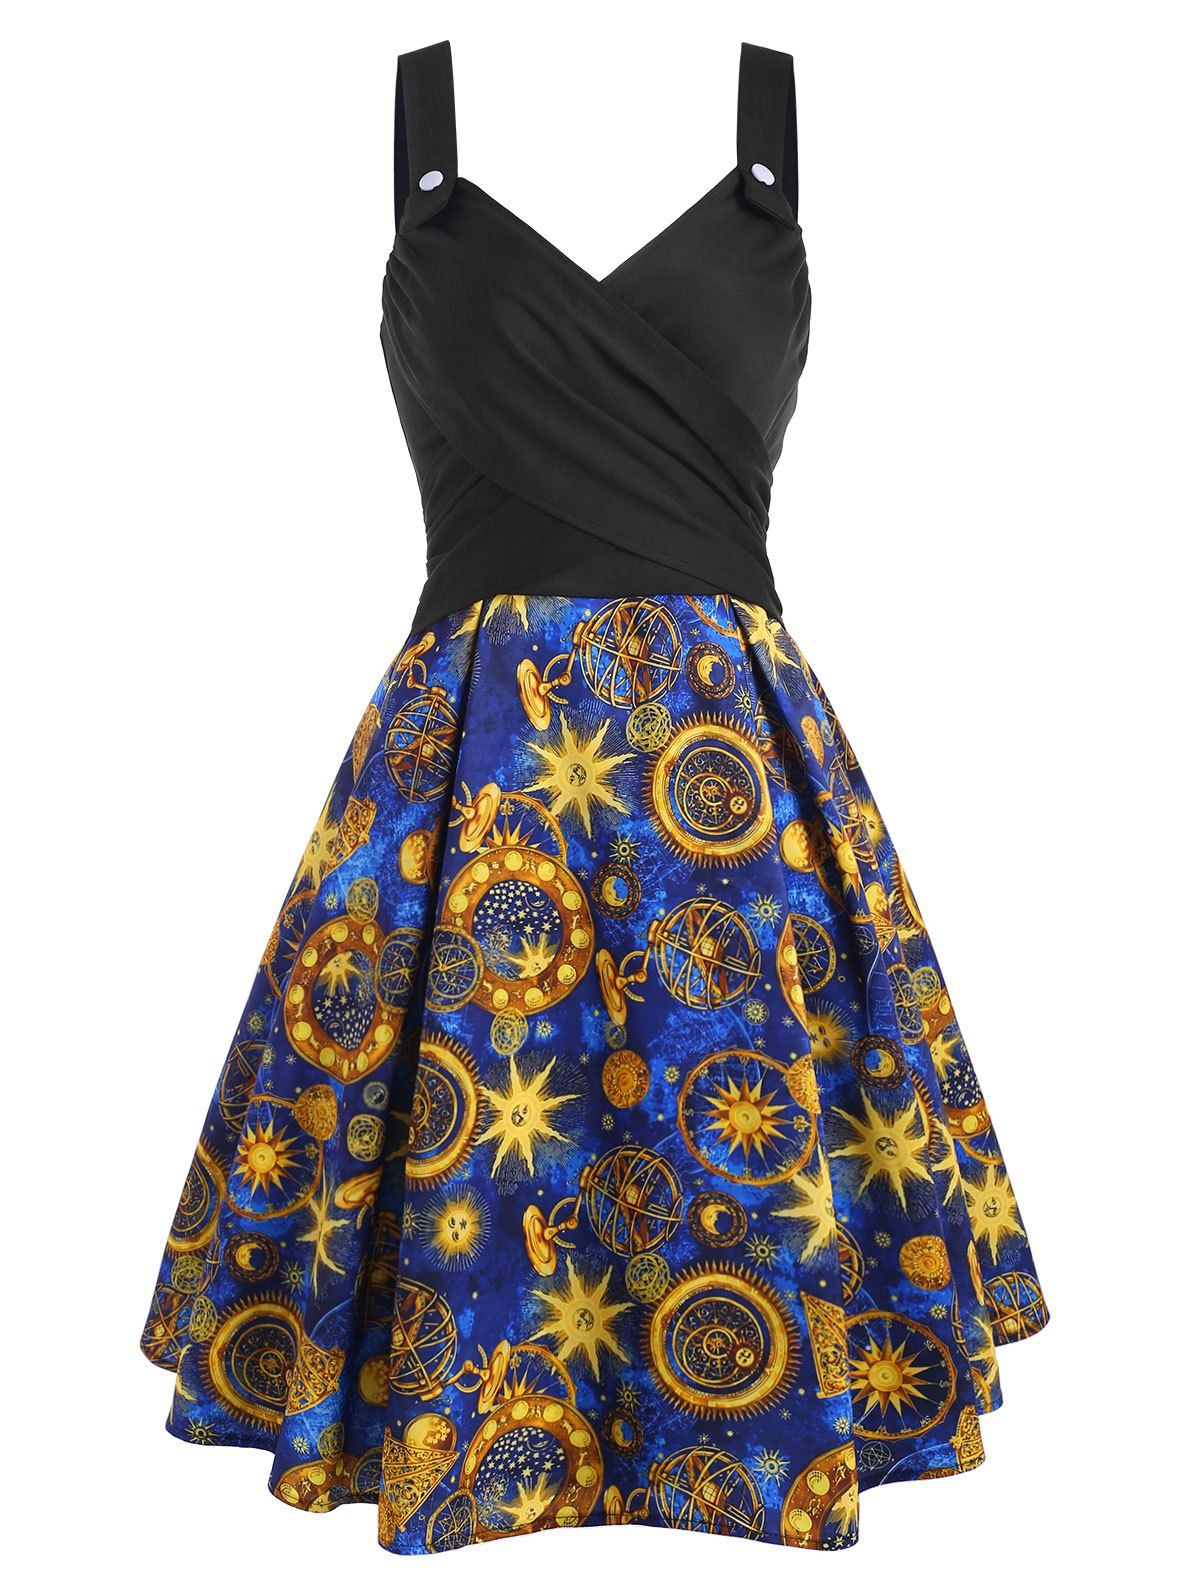 Criss Cross Mock Button Flower Sun Star Print Dress - DEEP BLUE 2XL